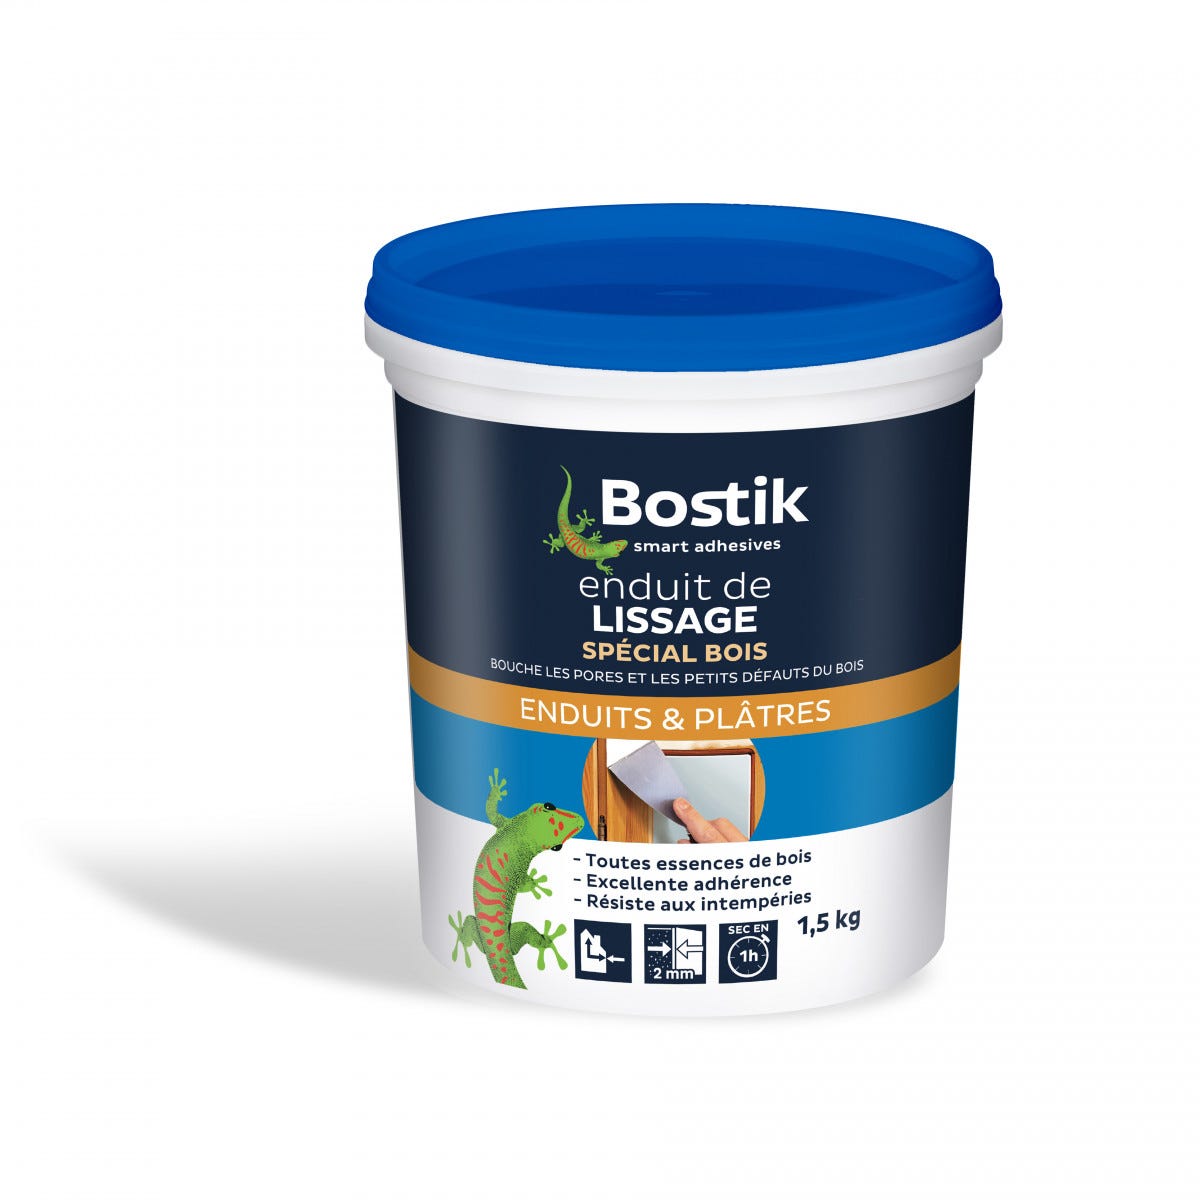 BOSTIK - Enduit rebouchage bois pâte 1,5kg - L'enduit de